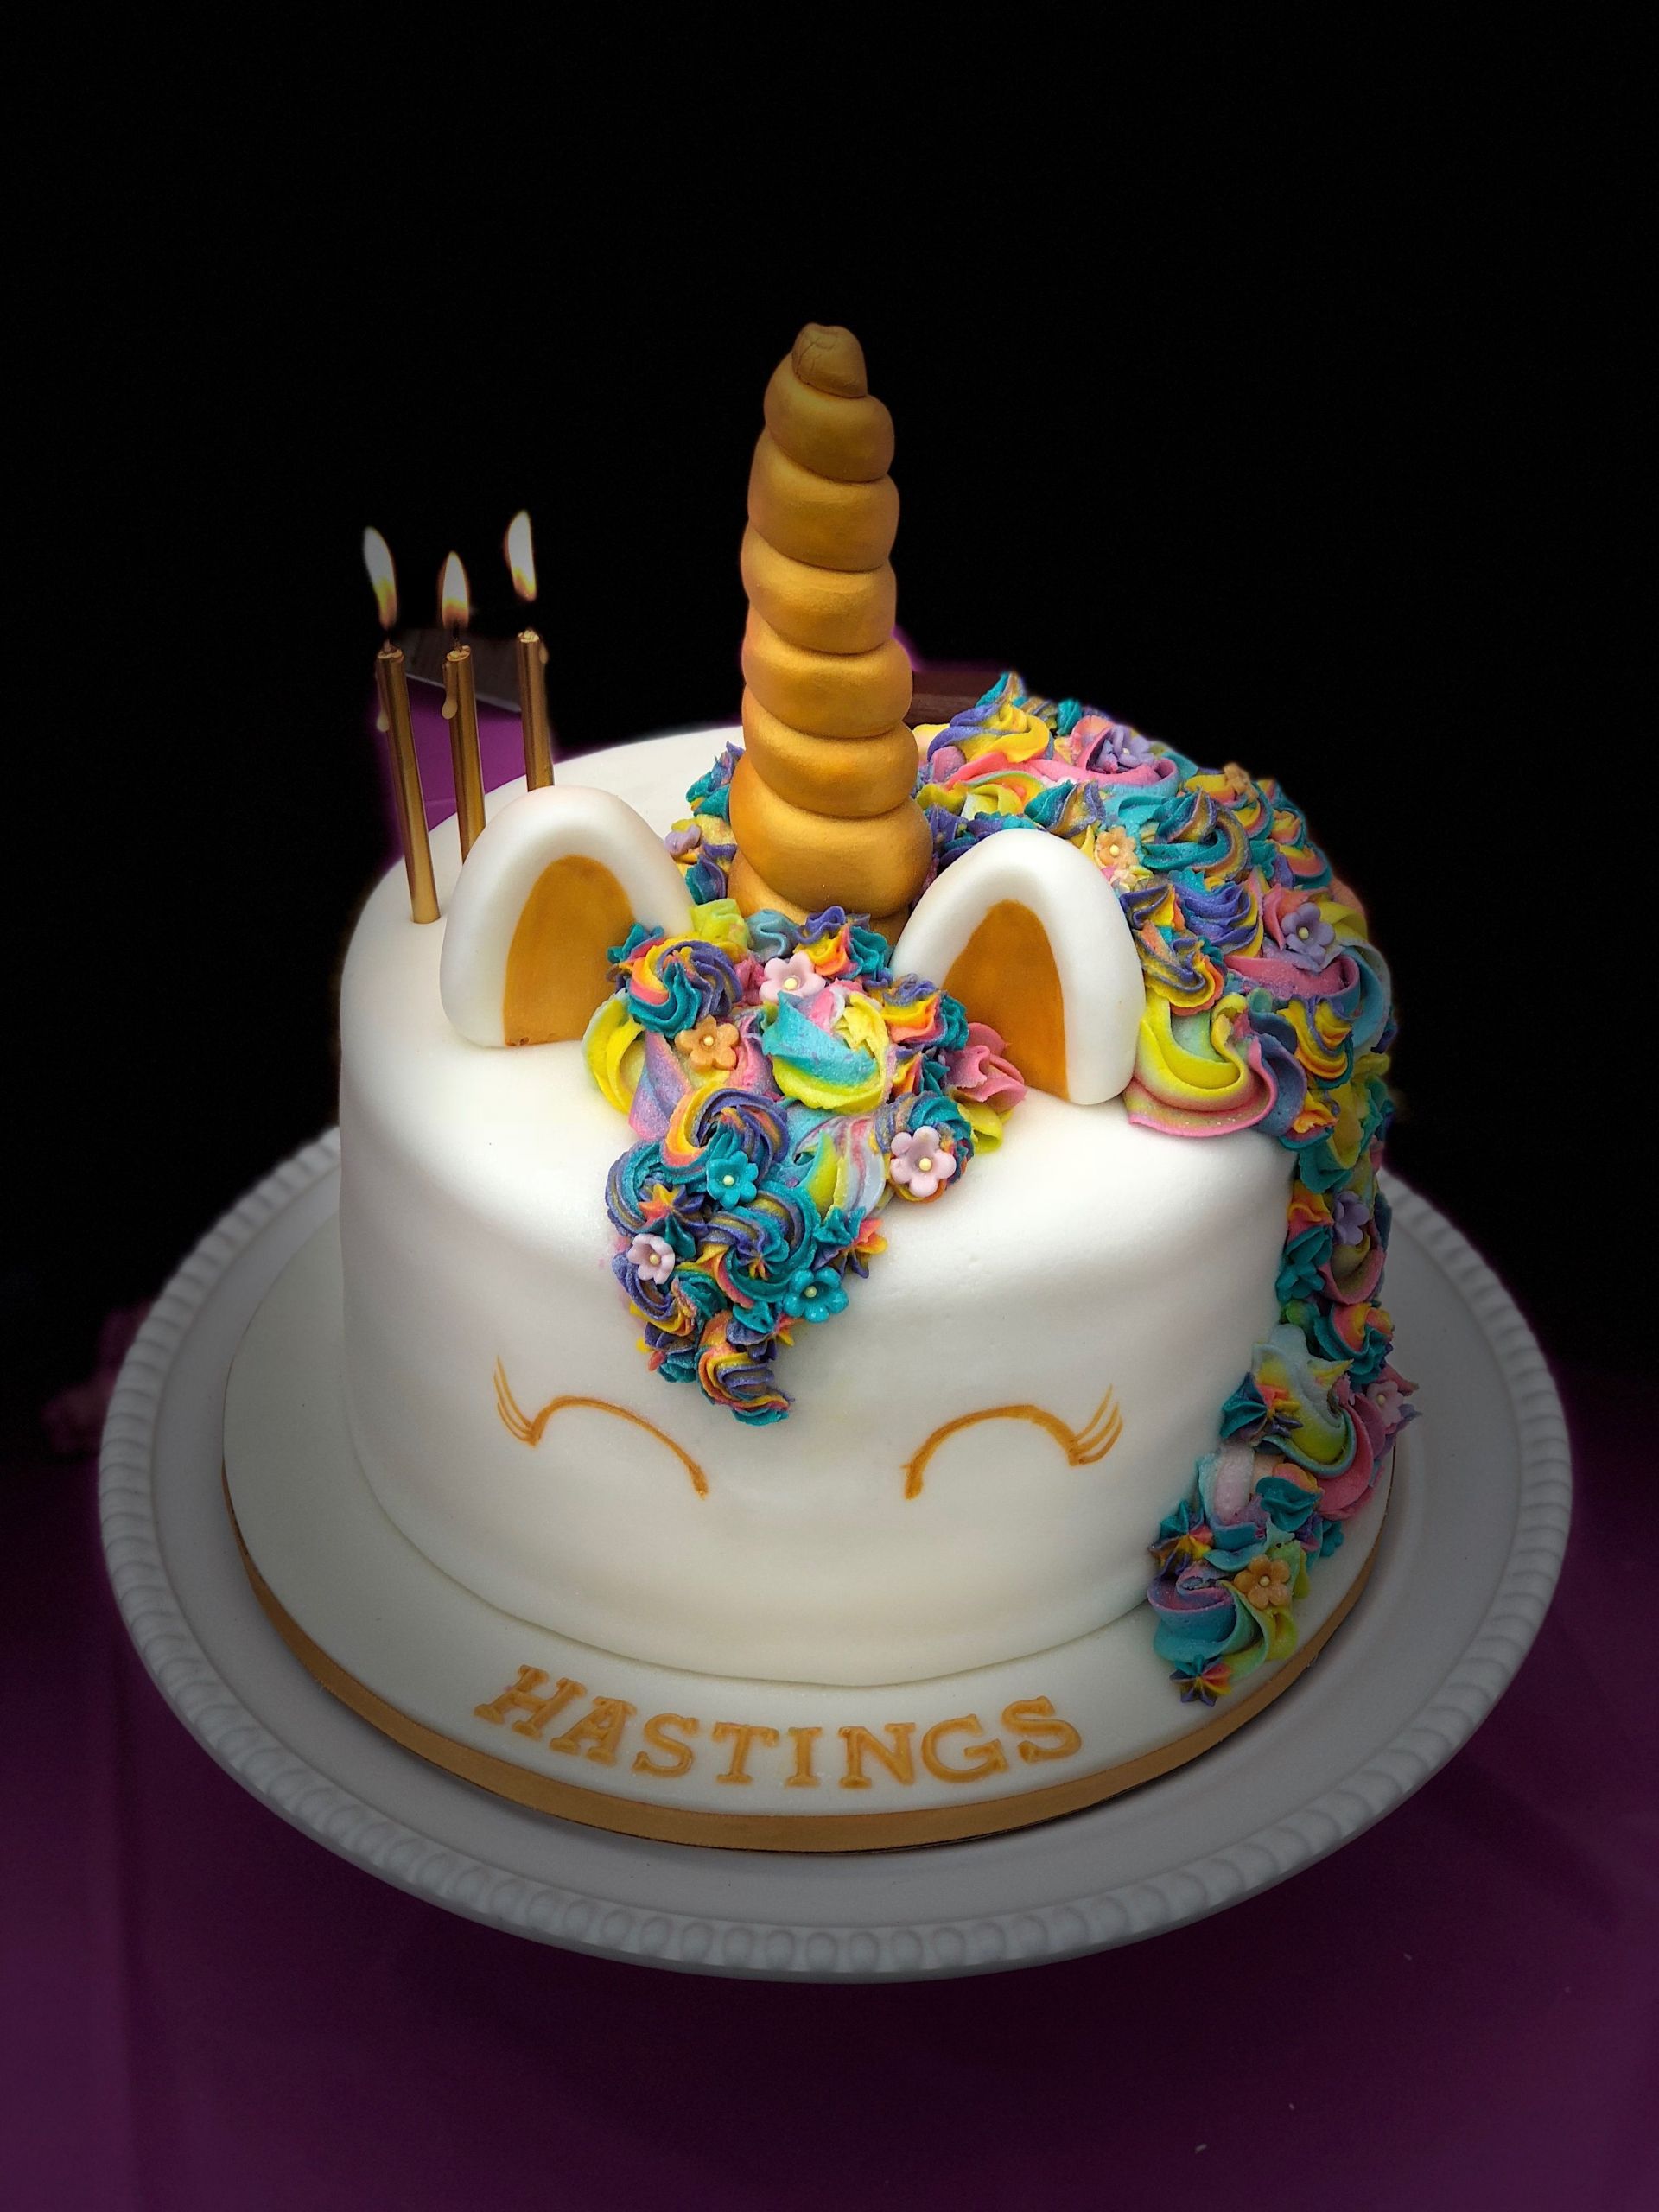 Birthday Party Ideas In Myrtle Beach Sc
 Unicorn cake by Wildflourdesserts in Myrtle Beach SC